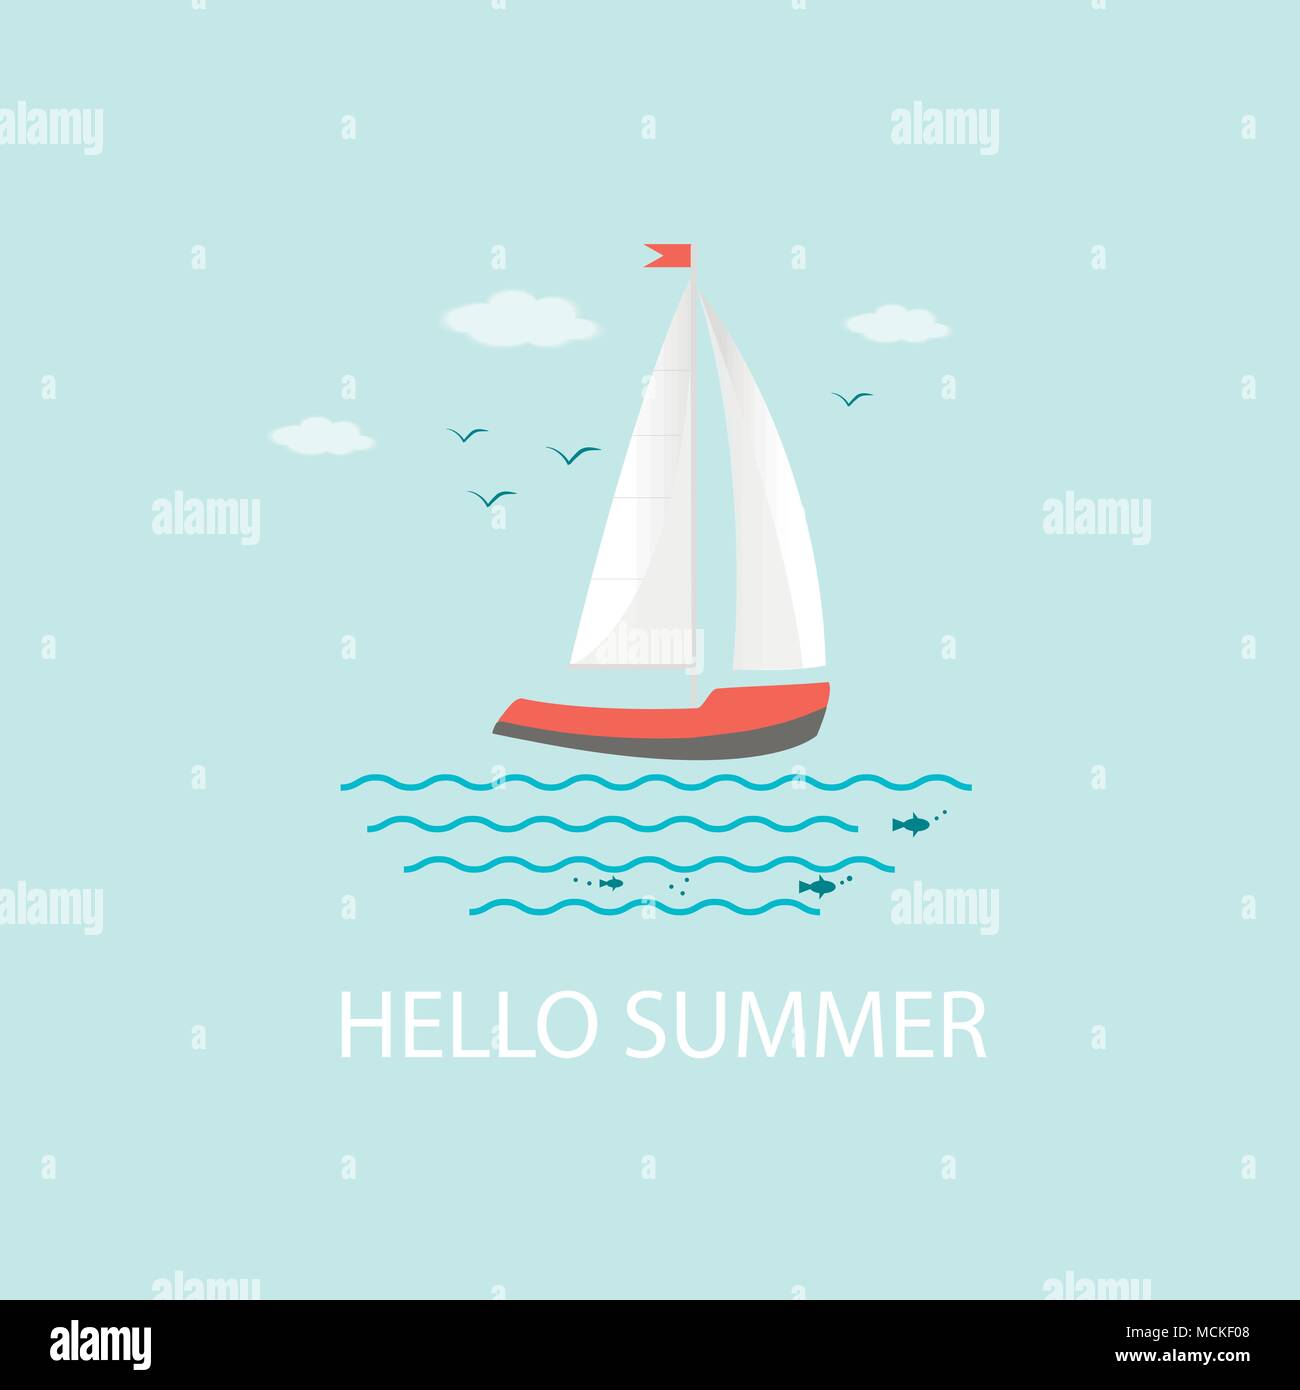 Bannière, poster, carte avec texte Hello Summer et véhicules nautiques : voile, bateau, bateau, yacht de luxe, hors-bord. Icône vecteur isolé sur ba bleu Illustration de Vecteur